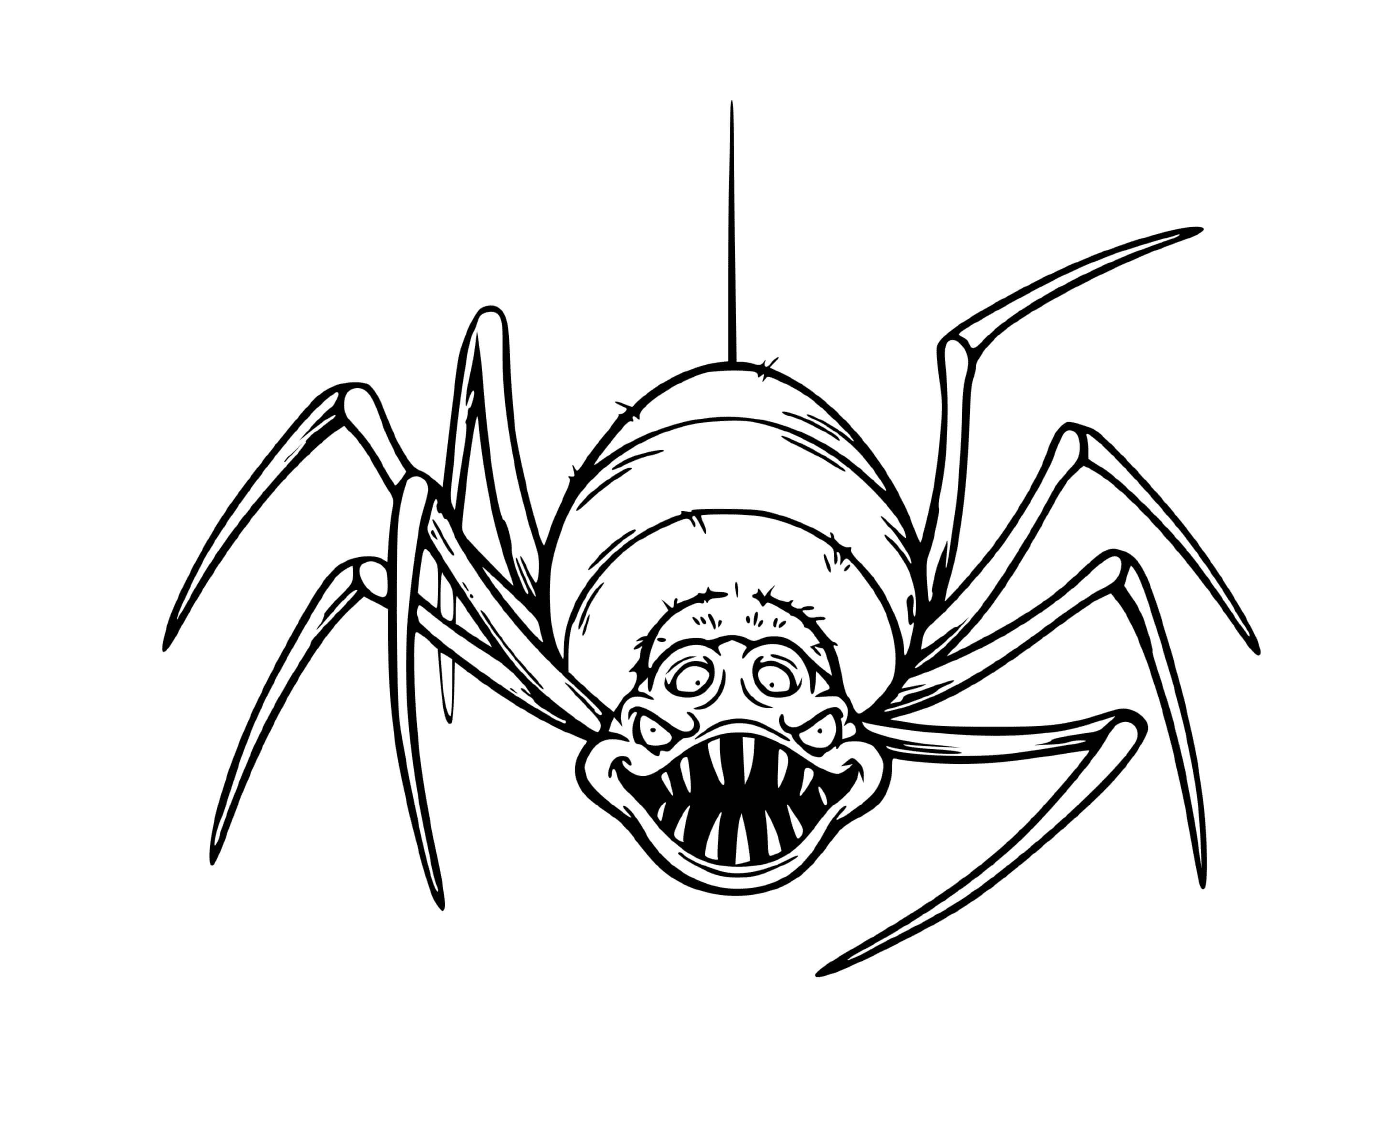  Una araña aterradora que da mucho miedo 